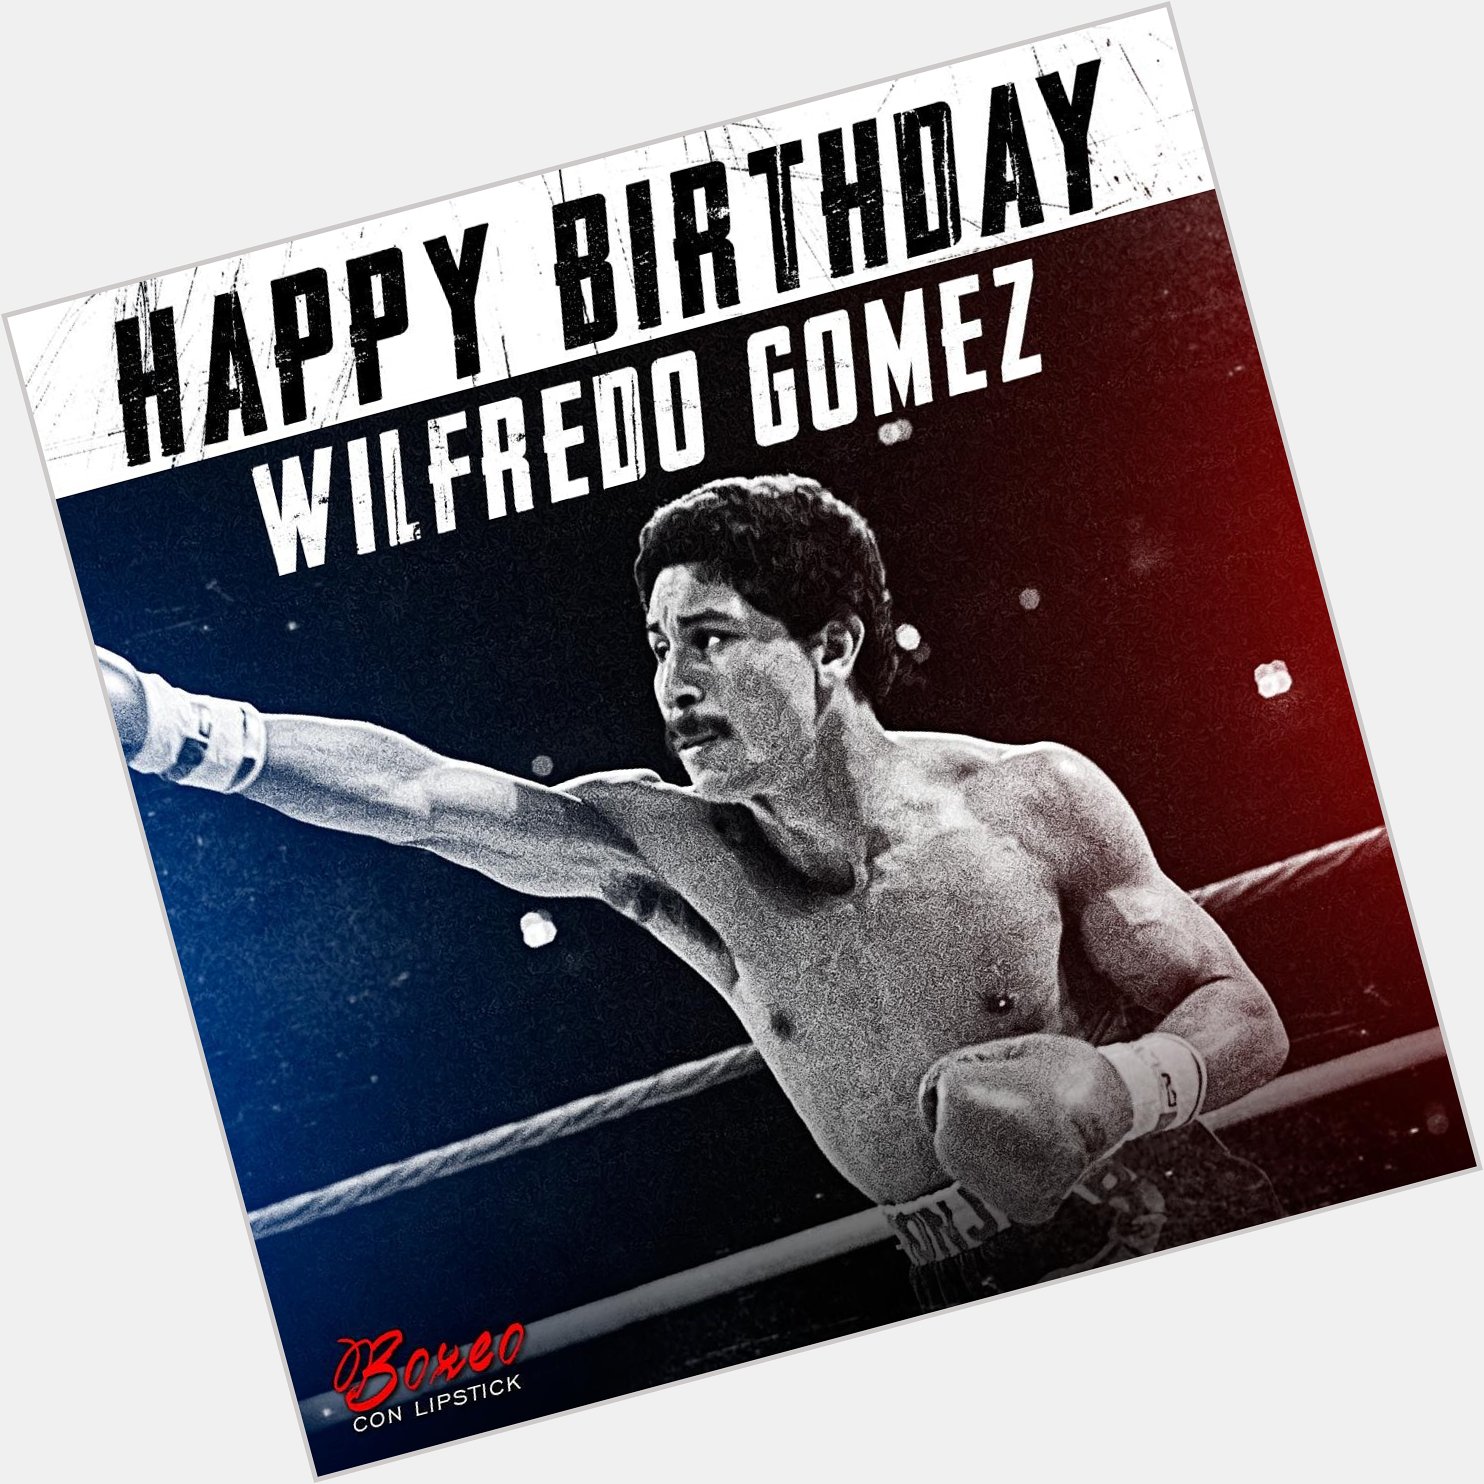 ¡Happy Birthday Wilfredo Gómez!          